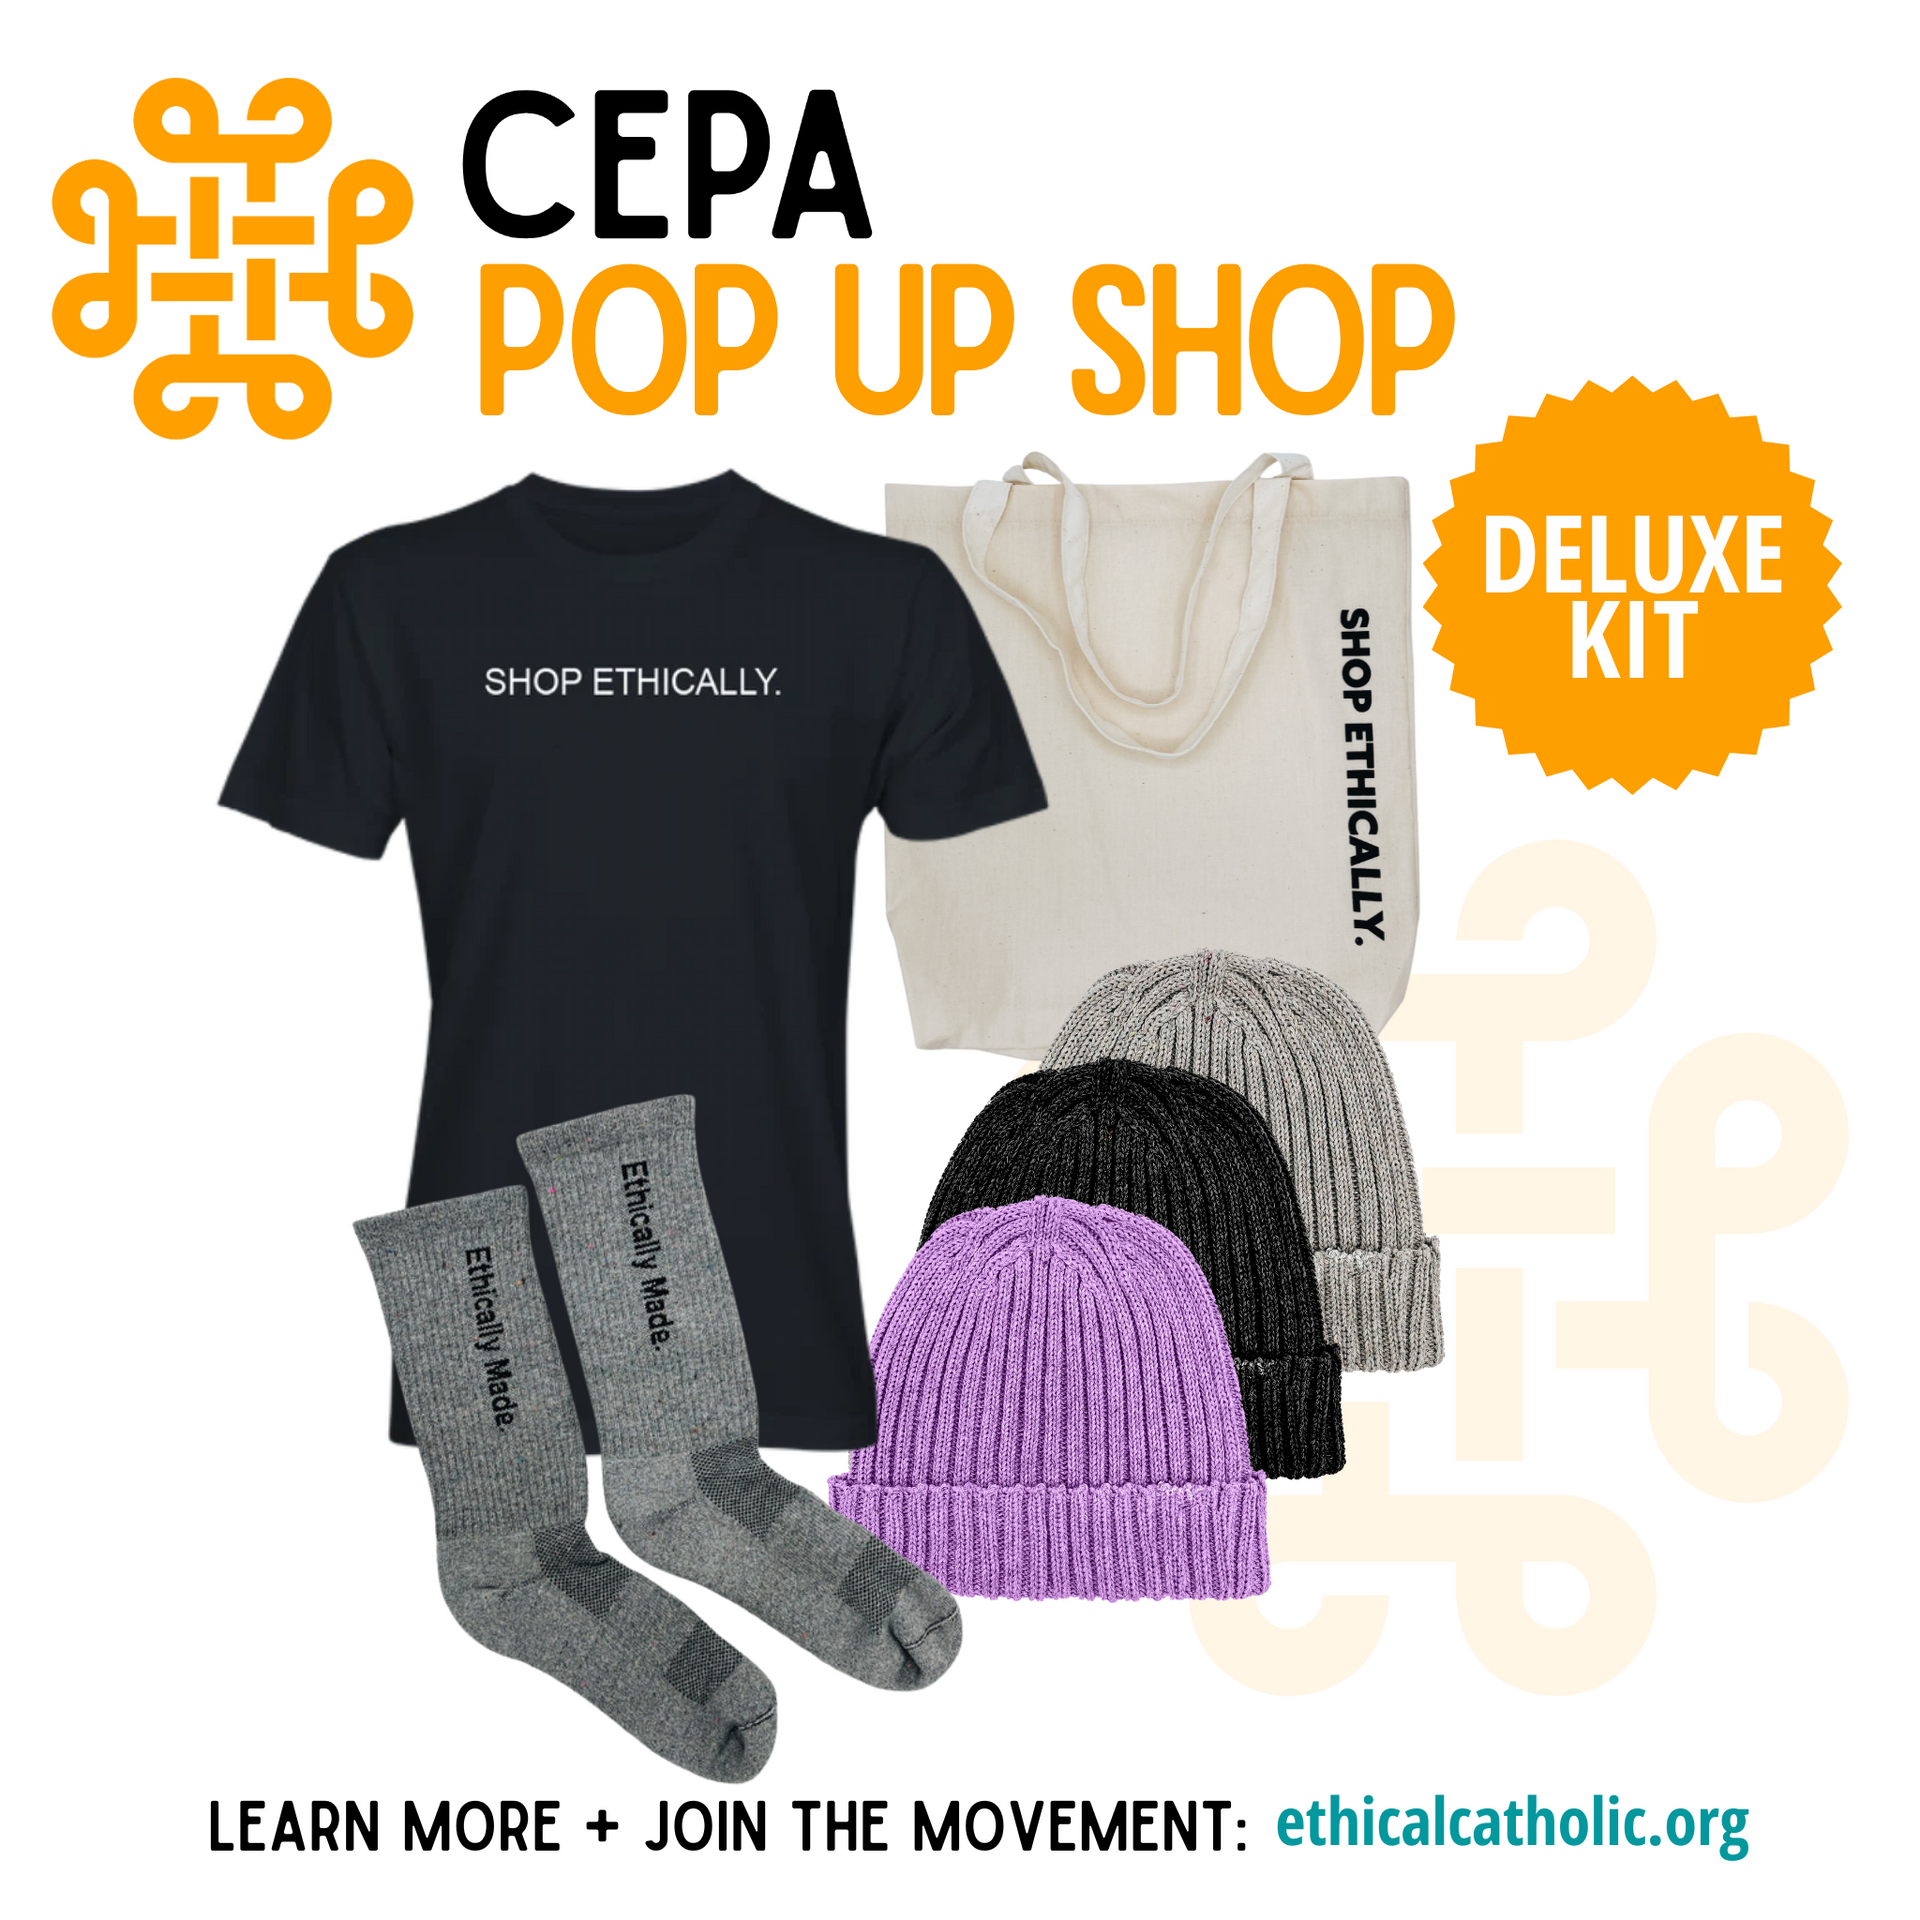 CEPA Pop Up Shop Deluxe Kit